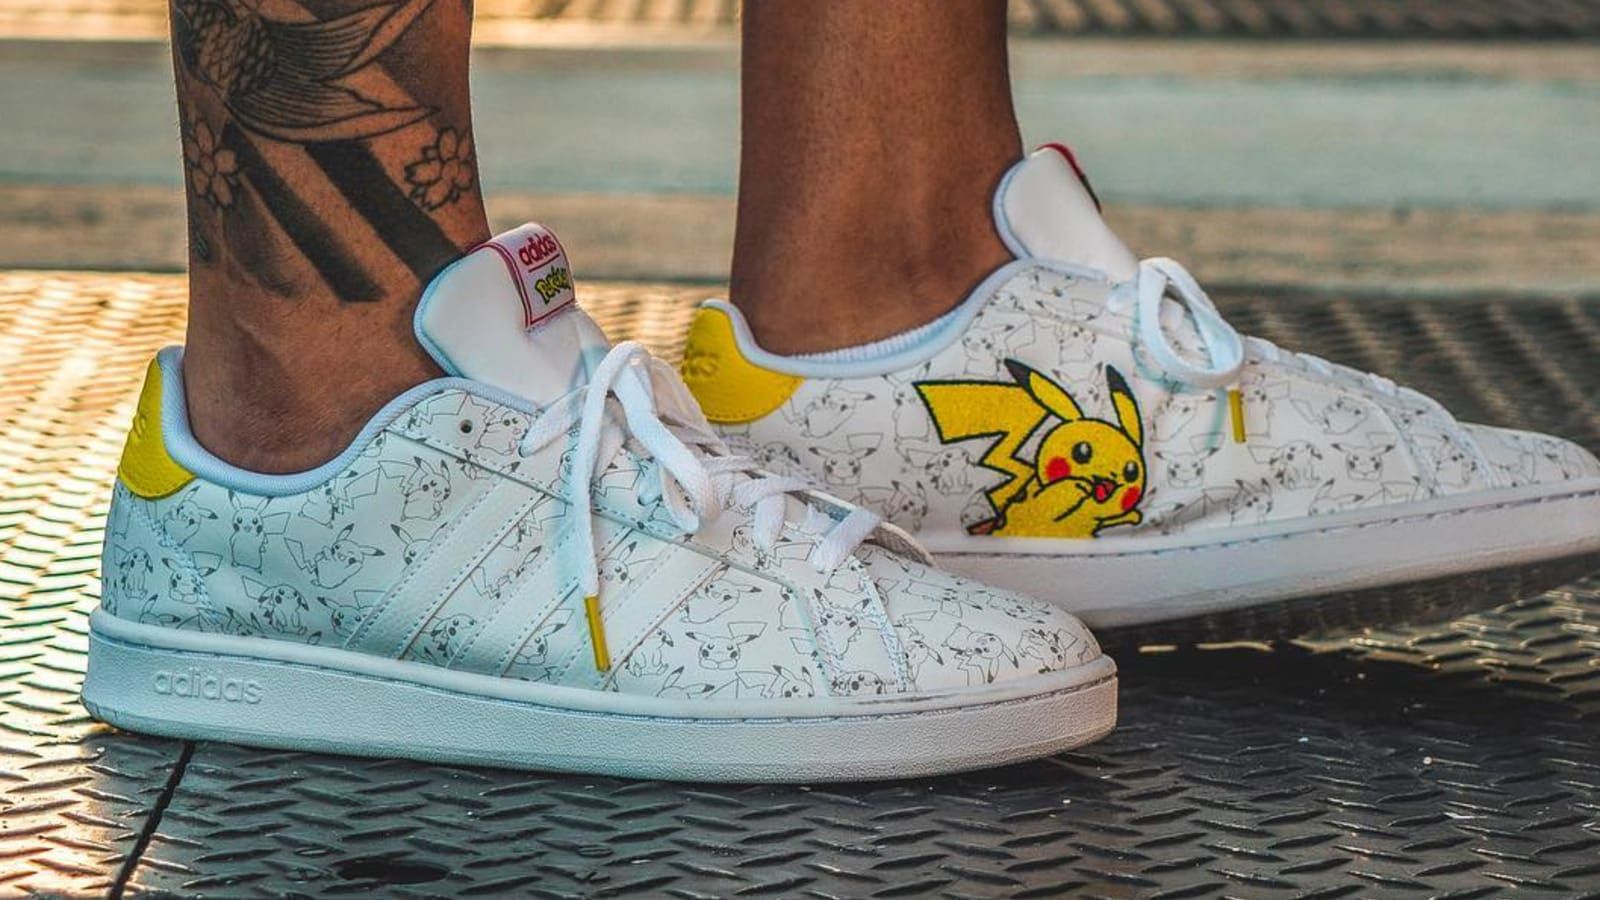 Pokémon x adidas Originals Campus Pikachu Sneakers